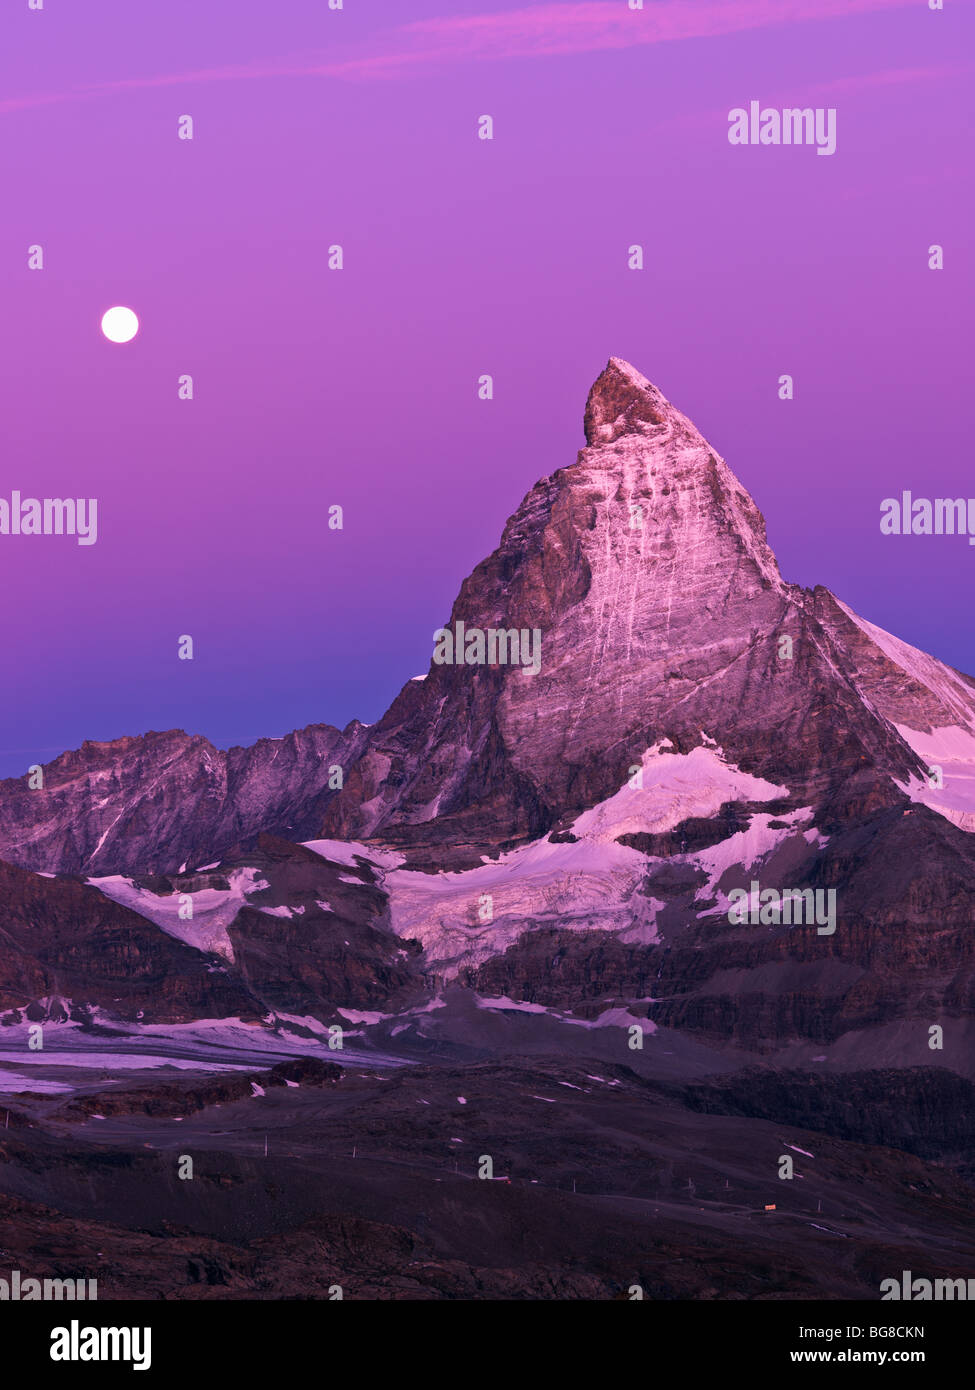 Suisse, Valais, Zermatt, le Gornergrat,lune se couche sur le Mont Cervin à l'aube Banque D'Images